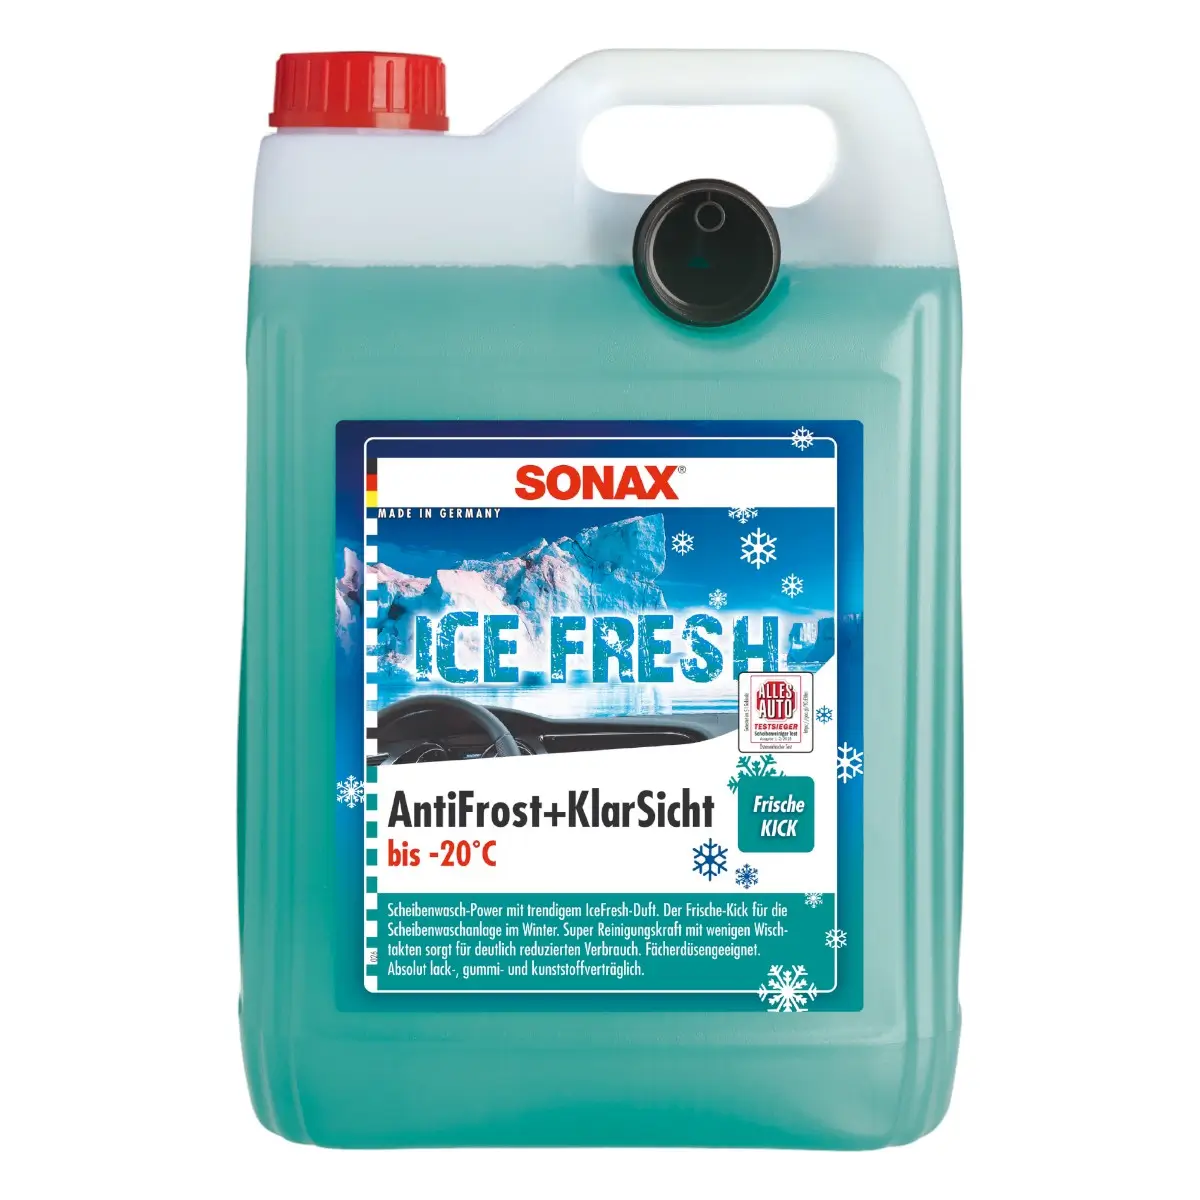 Sonax Antifrost + Klarsicht bis -20°C Ice-Fresh